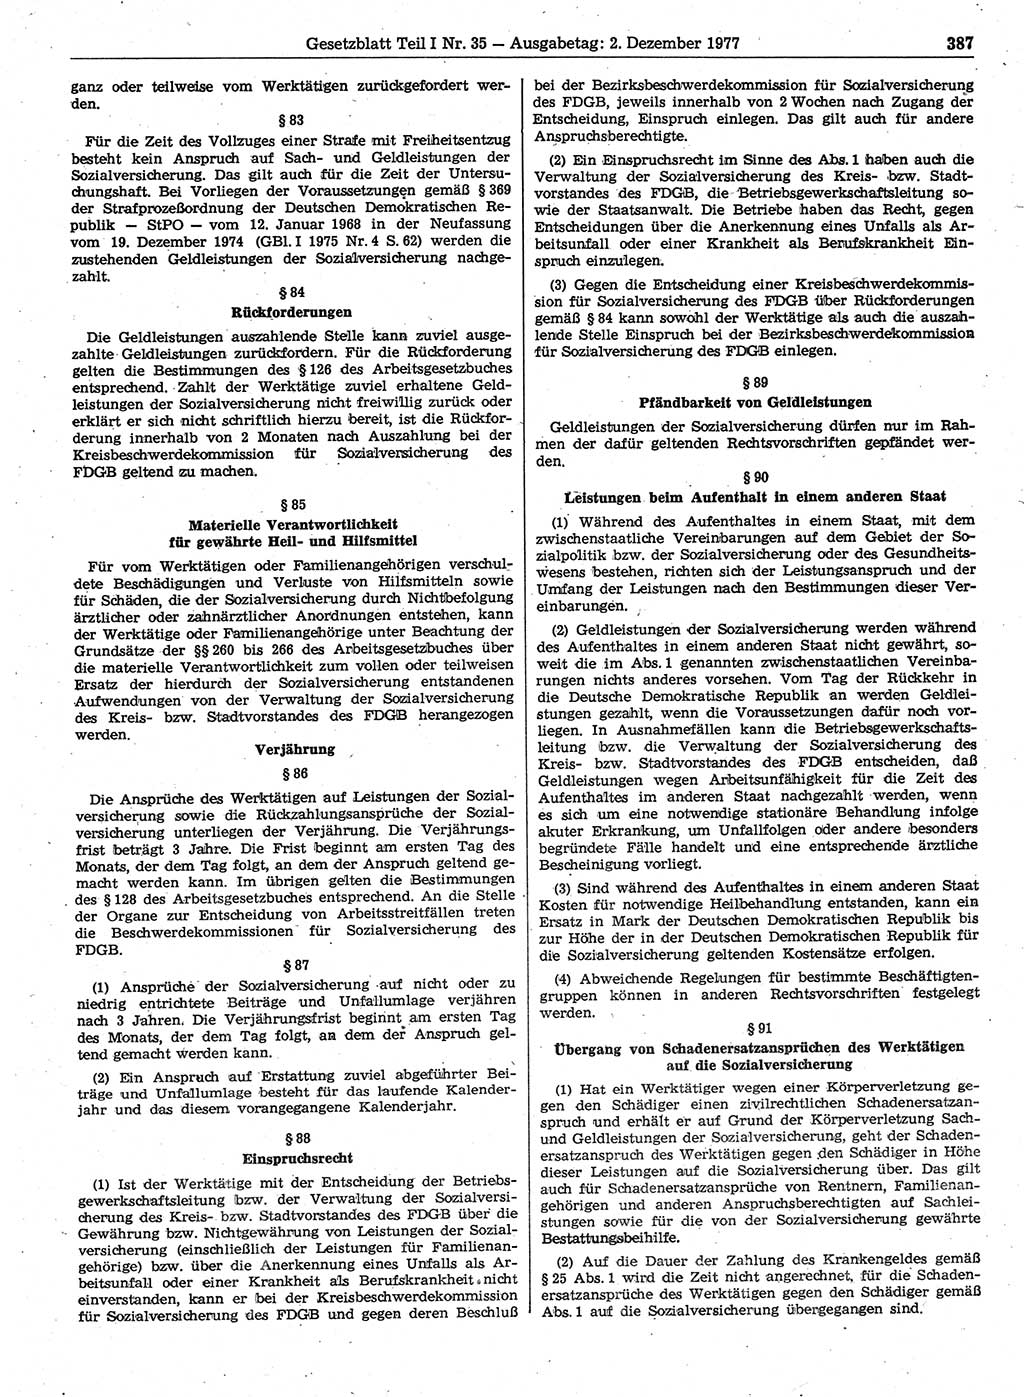 Gesetzblatt (GBl.) der Deutschen Demokratischen Republik (DDR) Teil Ⅰ 1977, Seite 387 (GBl. DDR Ⅰ 1977, S. 387)